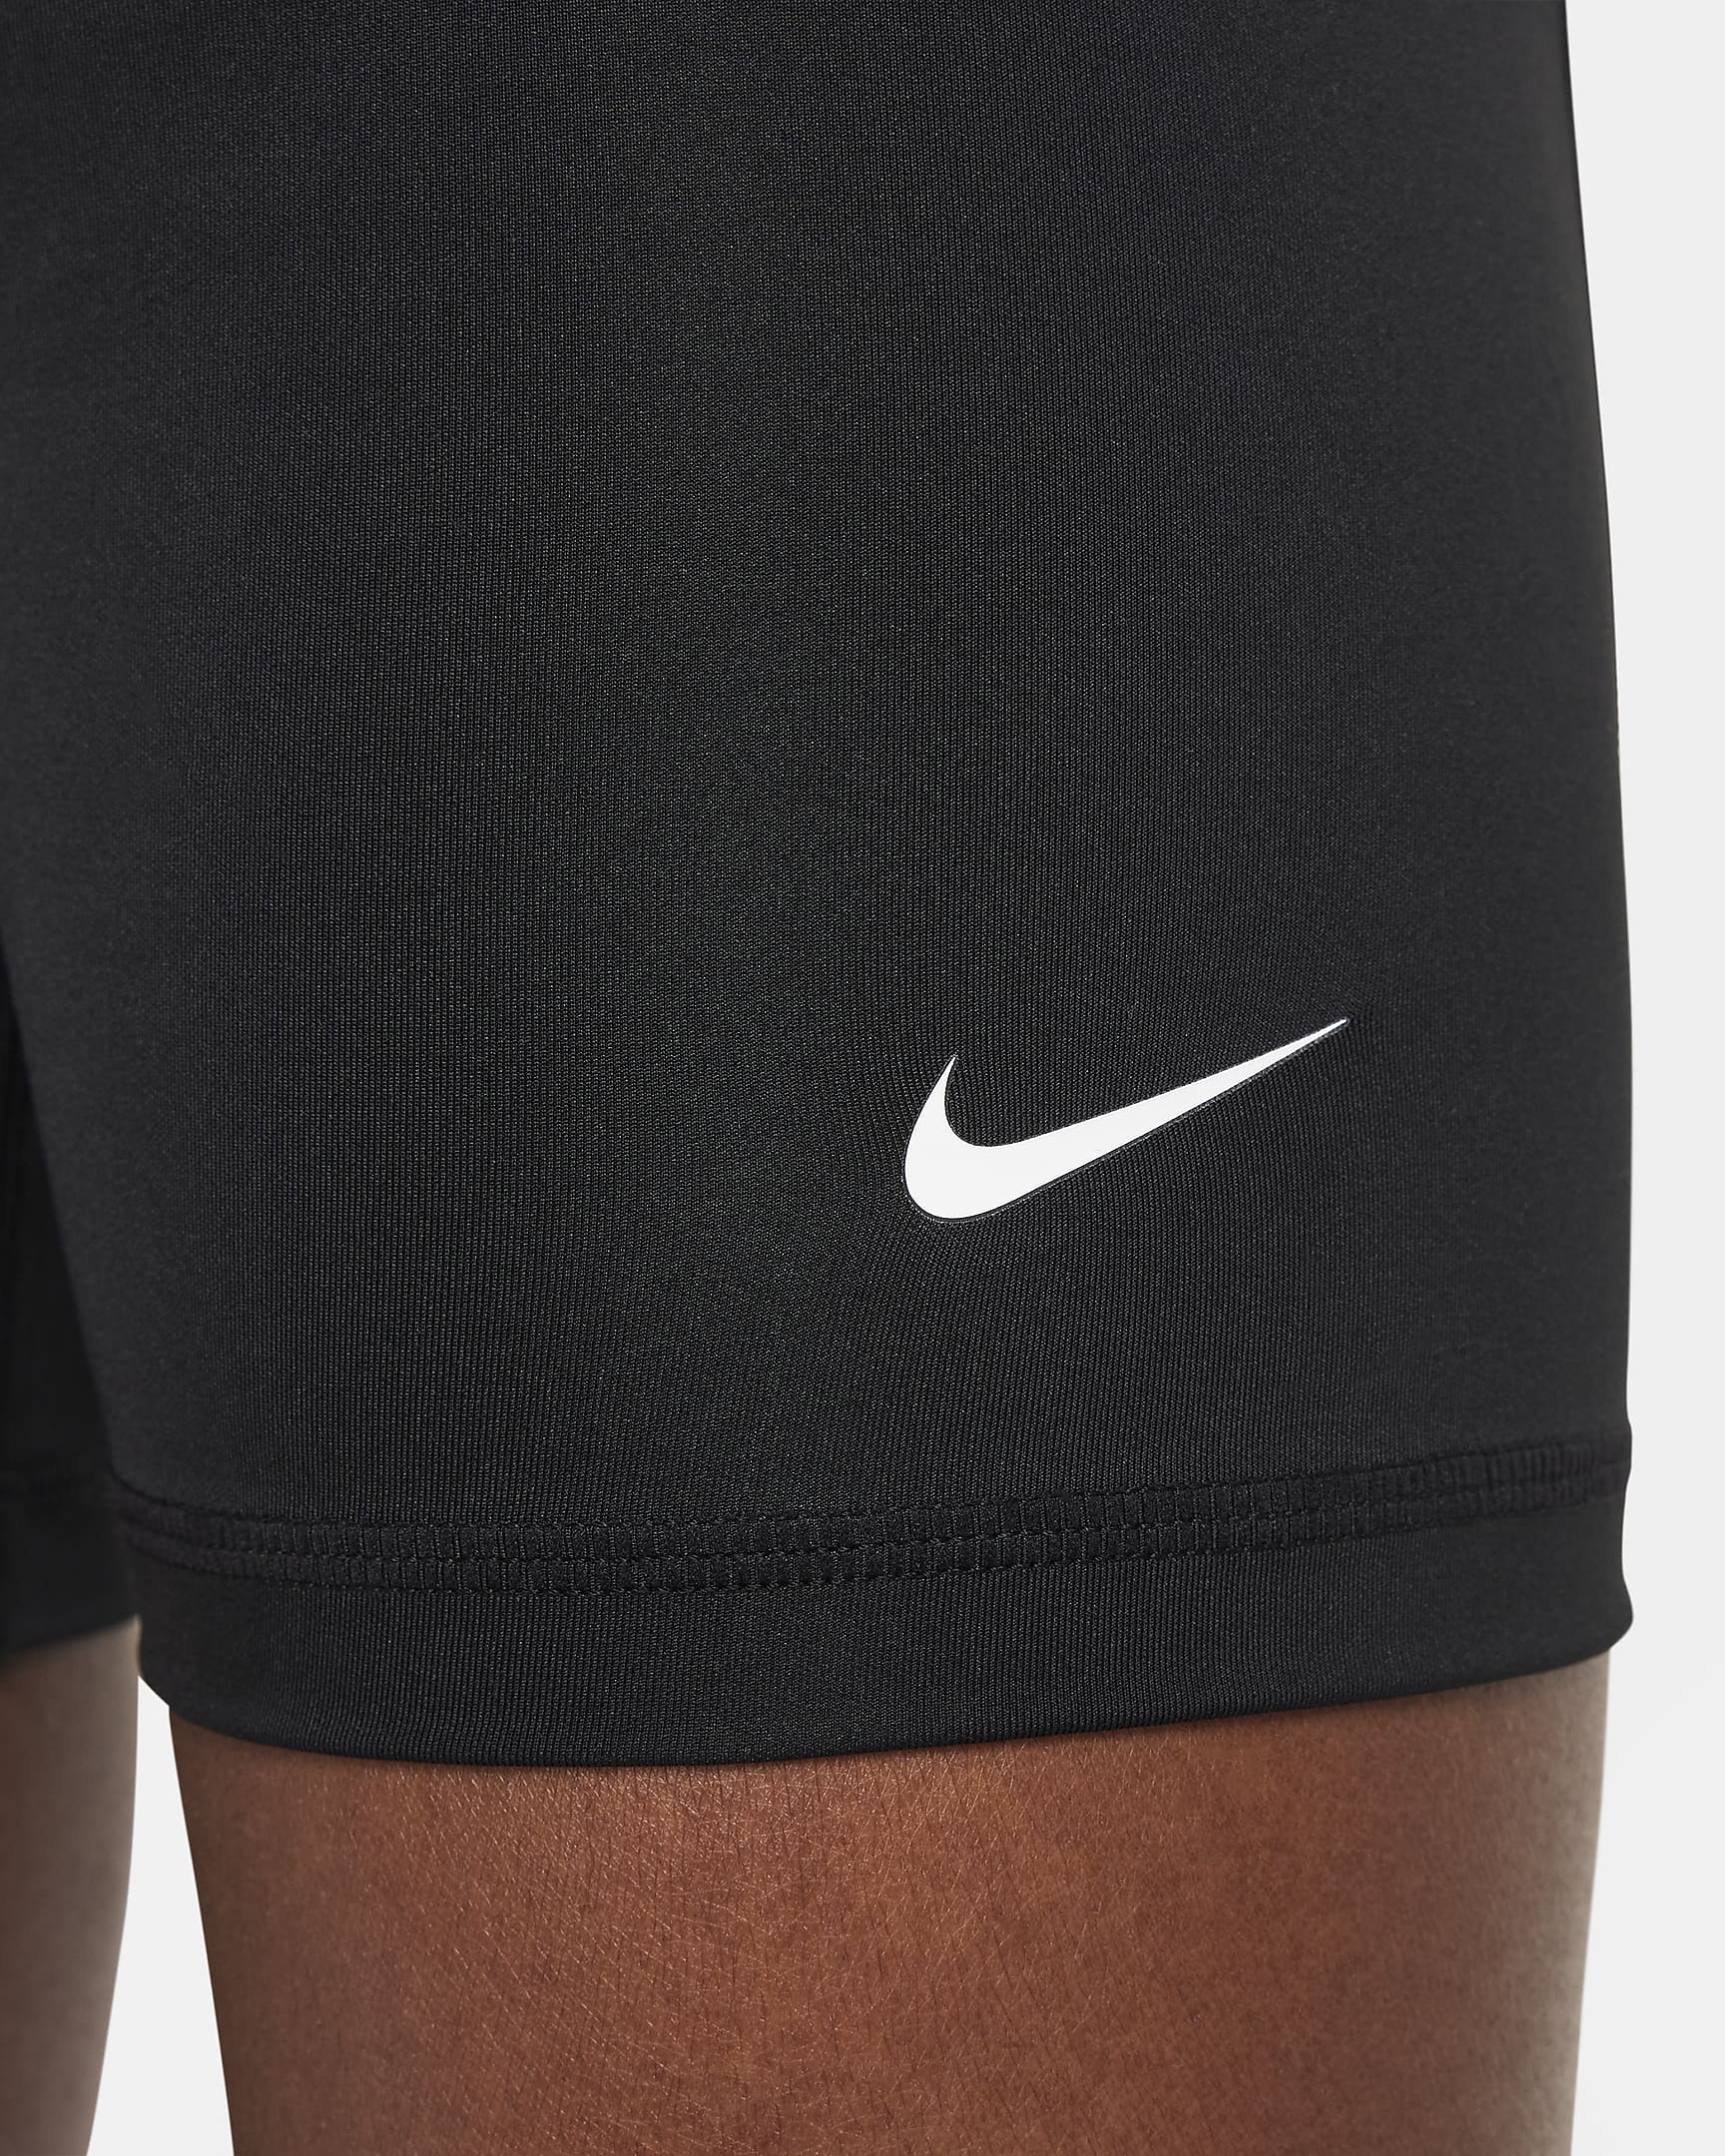 Nike Pro Shorts für ältere Kinder (Mädchen) - Schwarz/Weiß